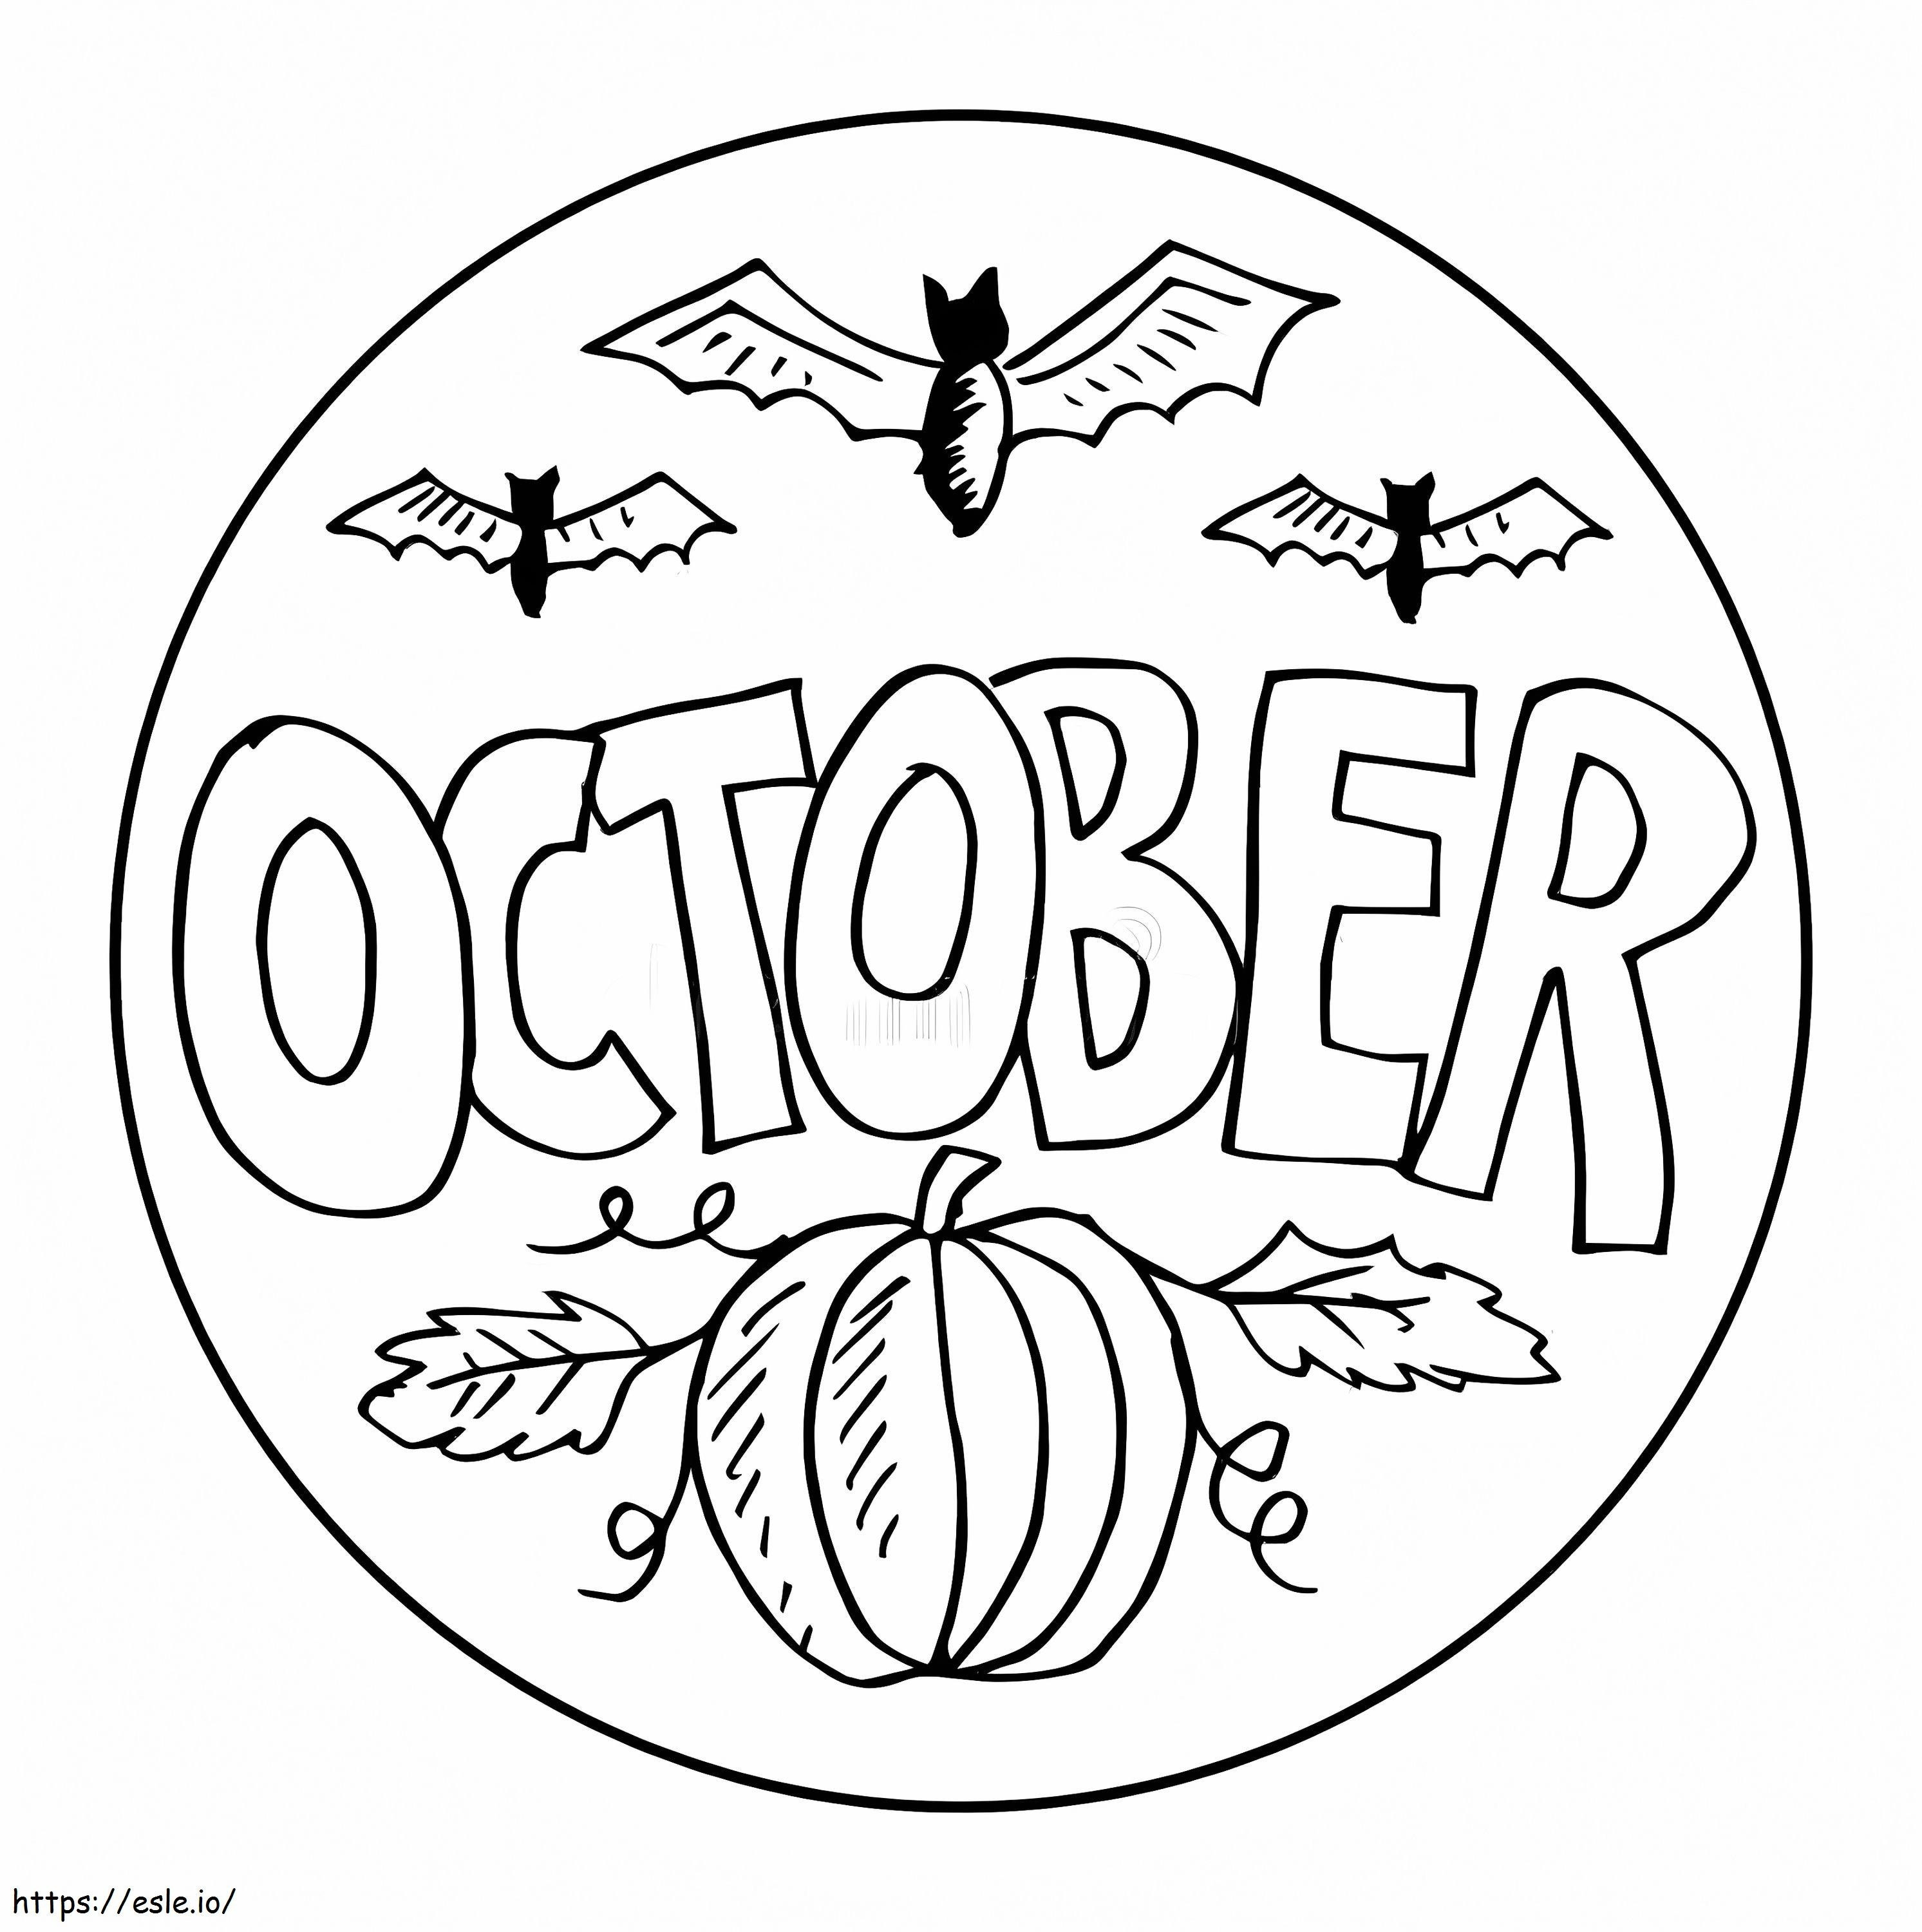 Coloriage Logo d'octobre à imprimer dessin